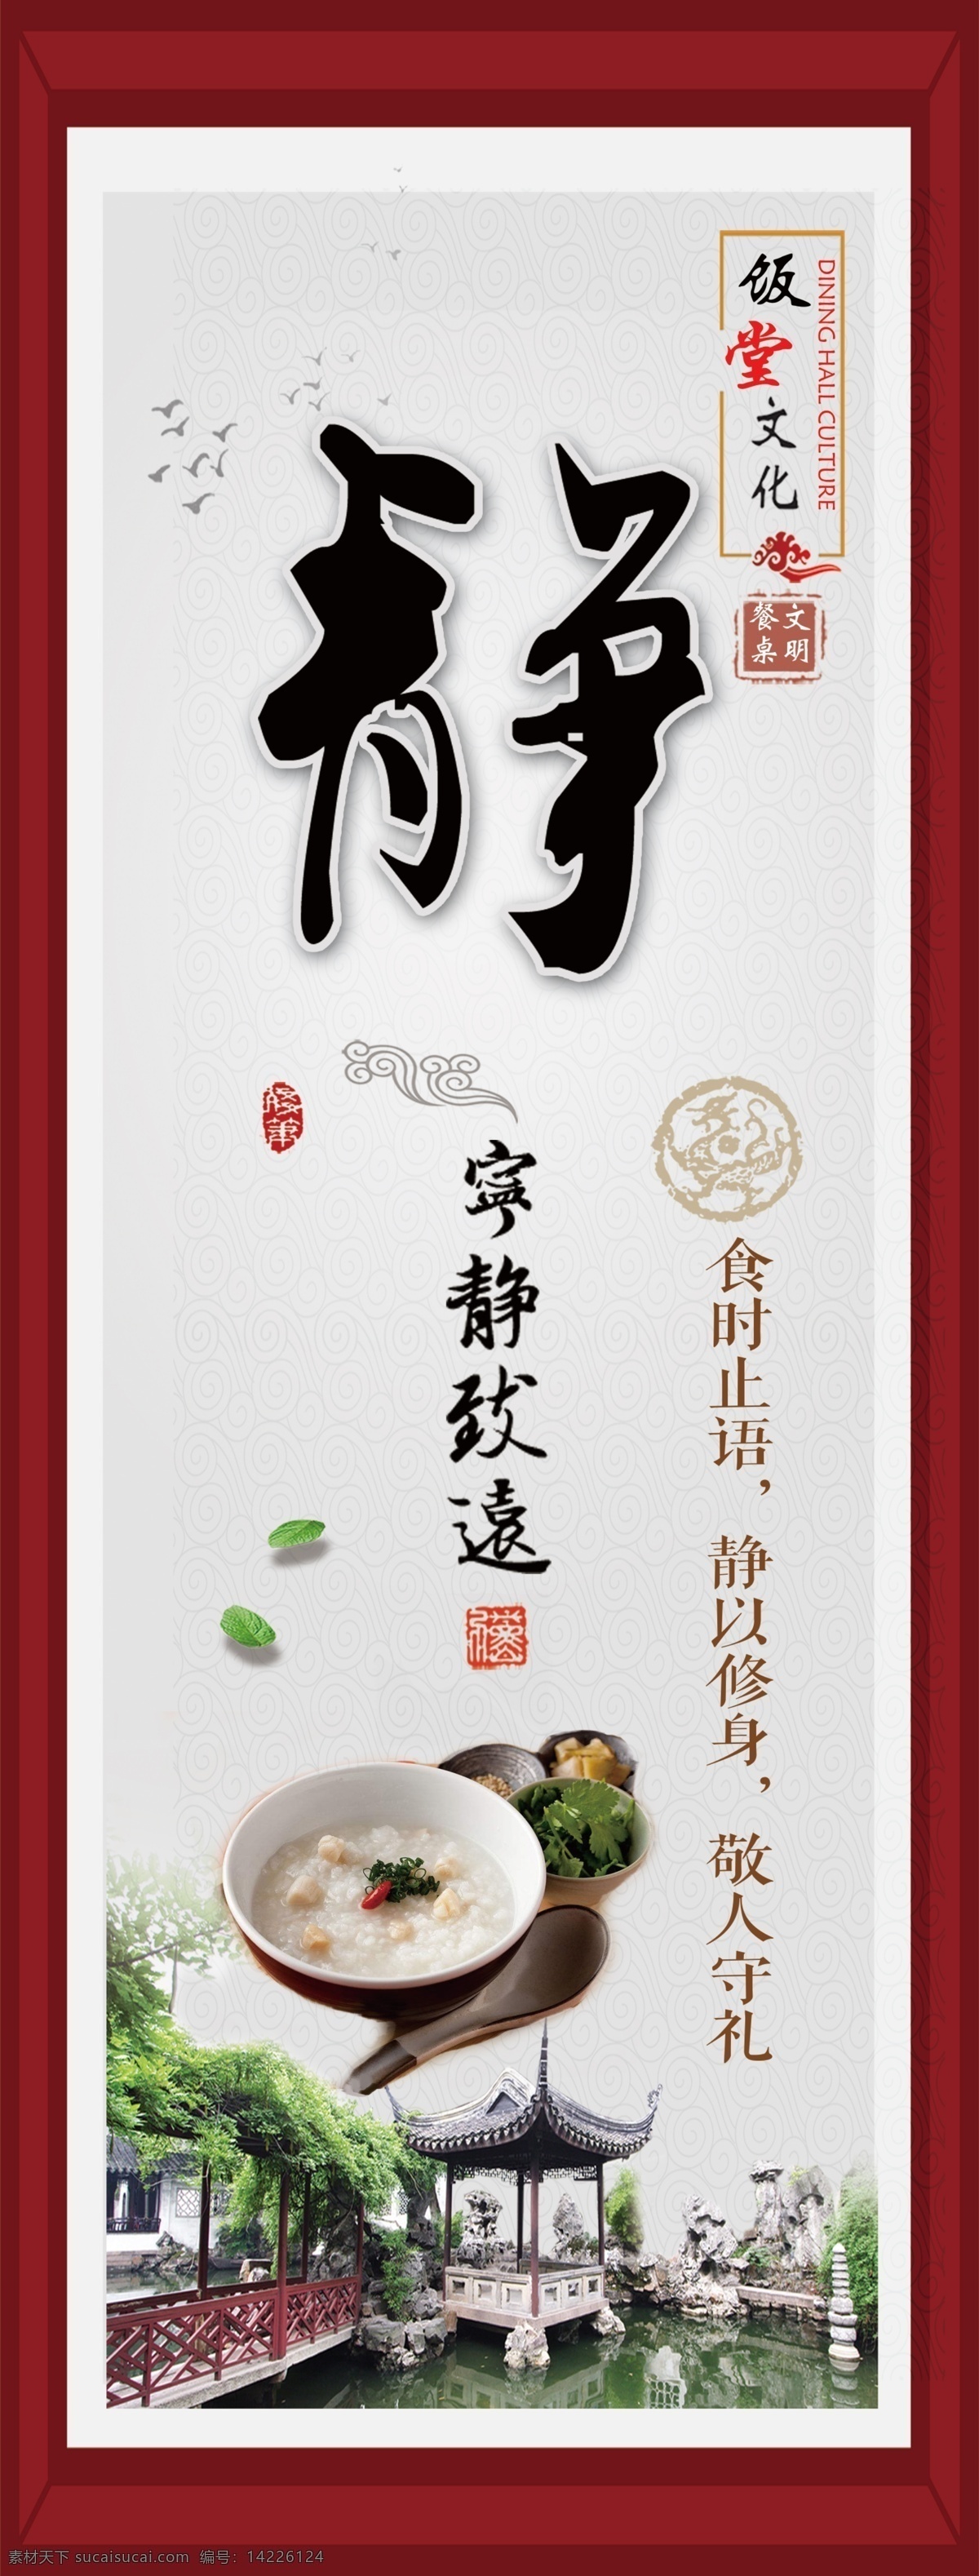 标语 古典 中国风 整洁 干净 食堂标语 饭堂 安静 止语 室内广告设计